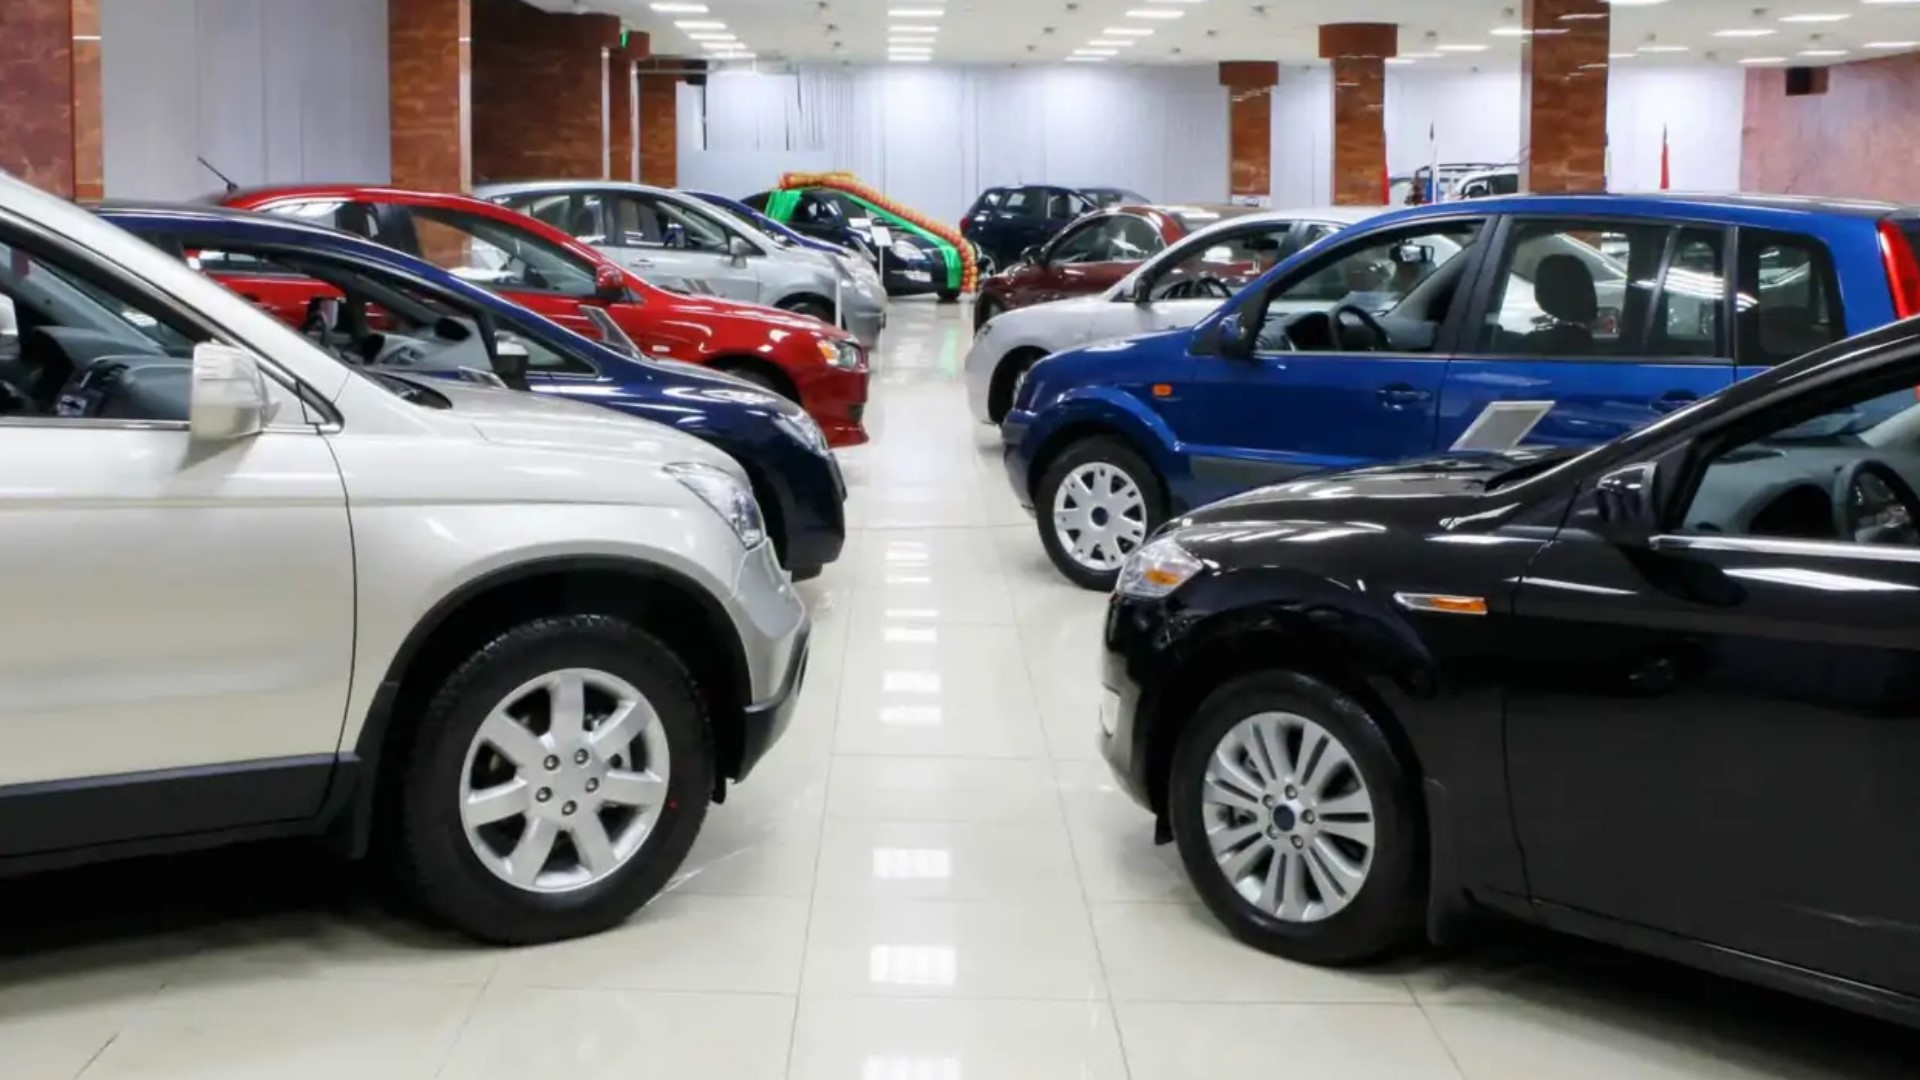 Otomobil Satışlarında Artış Devam Ediyor